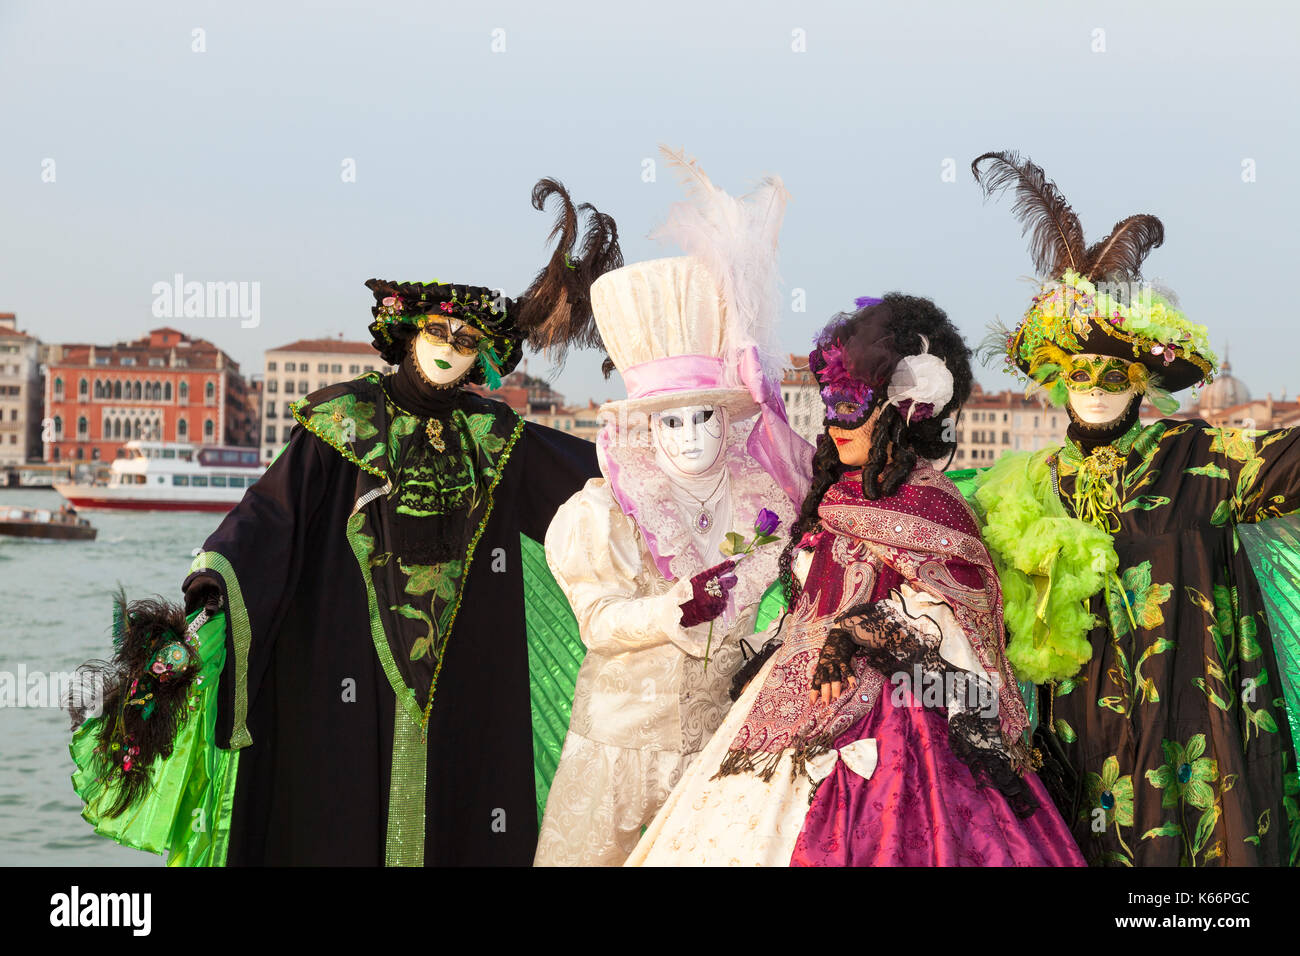 Eine Gruppe von vier Personen in der klassischen Karneval Kostüme und  Masken an der 2017 Karneval in Venedig, Italien posiert im San Giorgio  Maggiore bei Sonnenuntergang mit der La Stockfotografie - Alamy